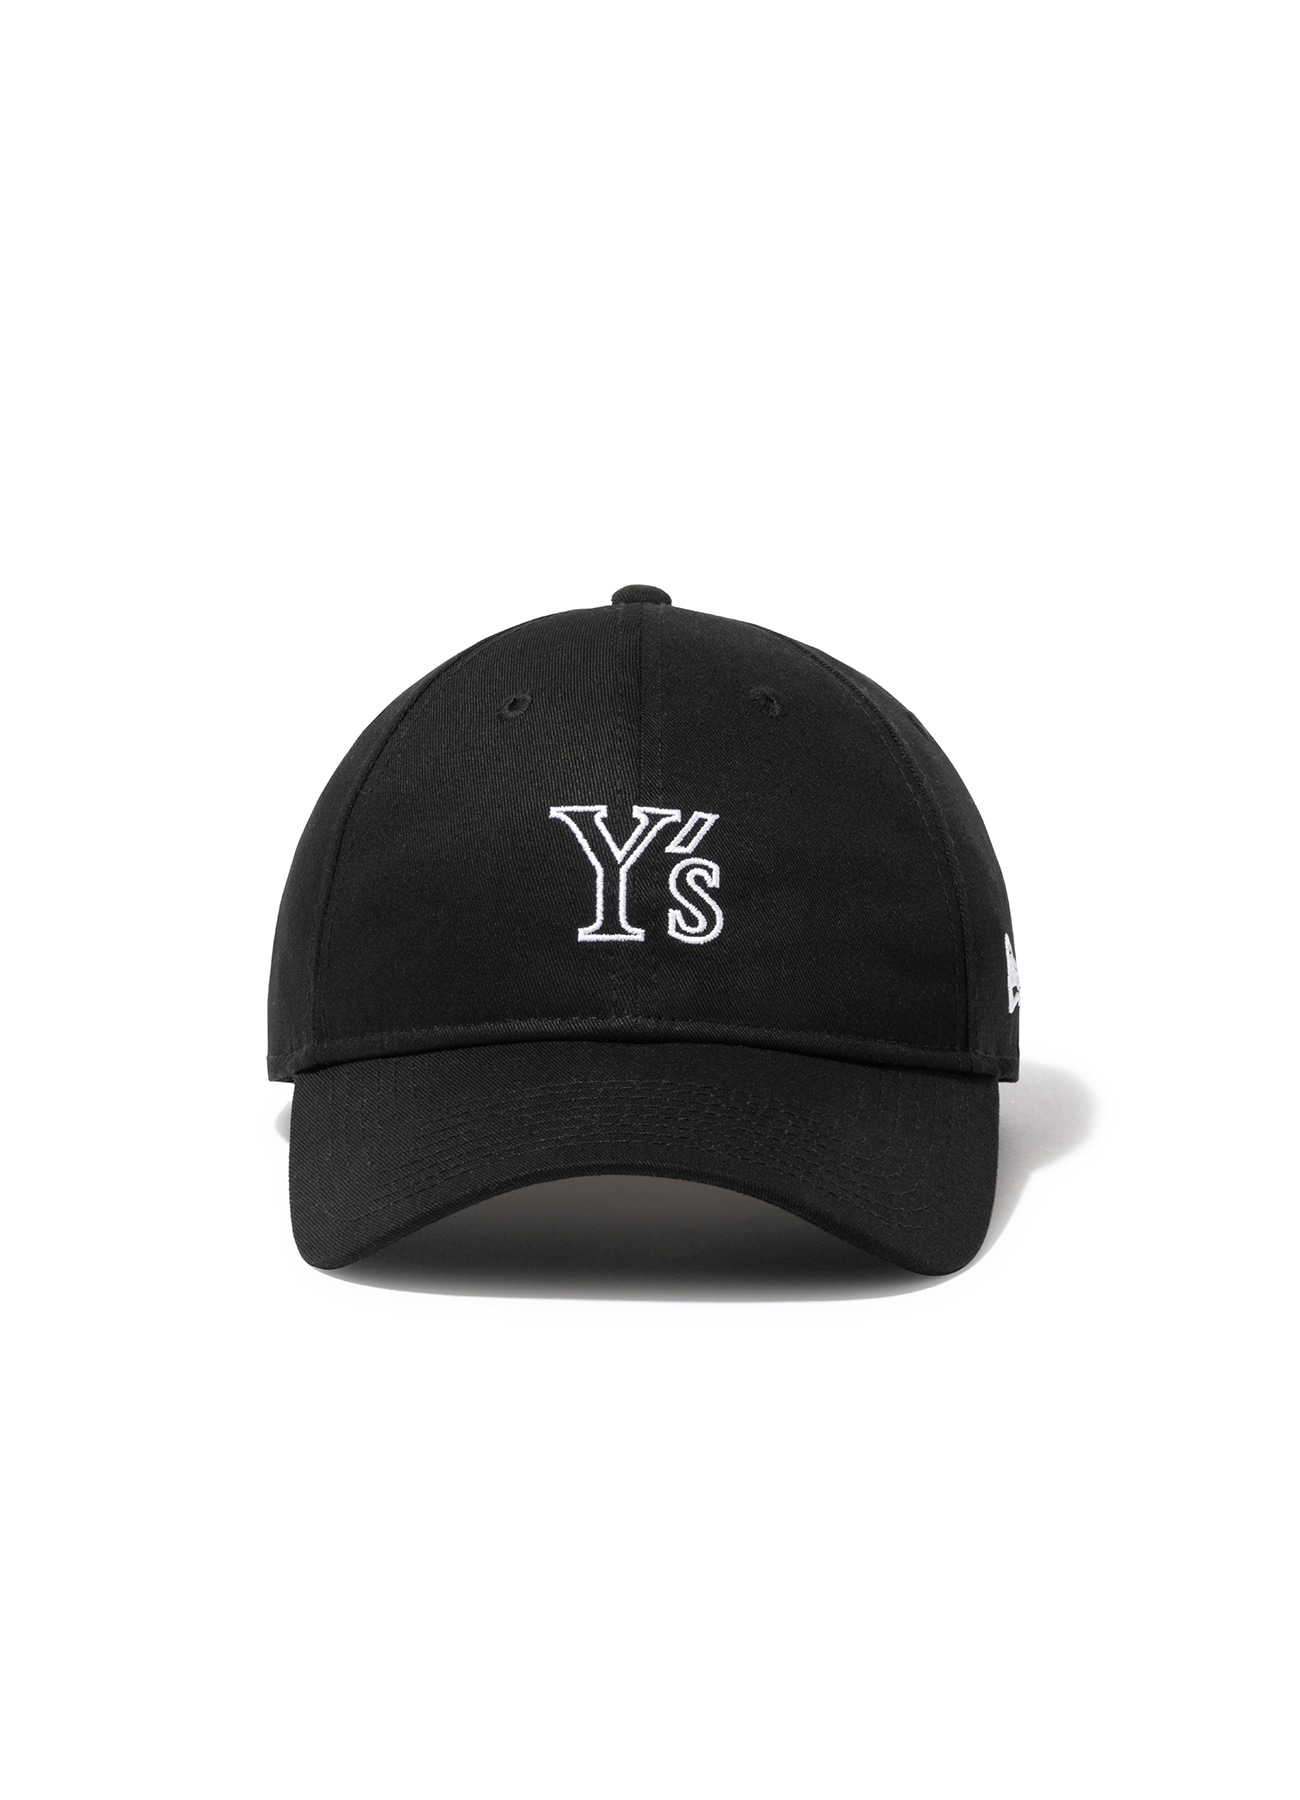 Y's × New Era] 9THIRTY Y's LOGO CAP(FREE SIZE Black): Y's